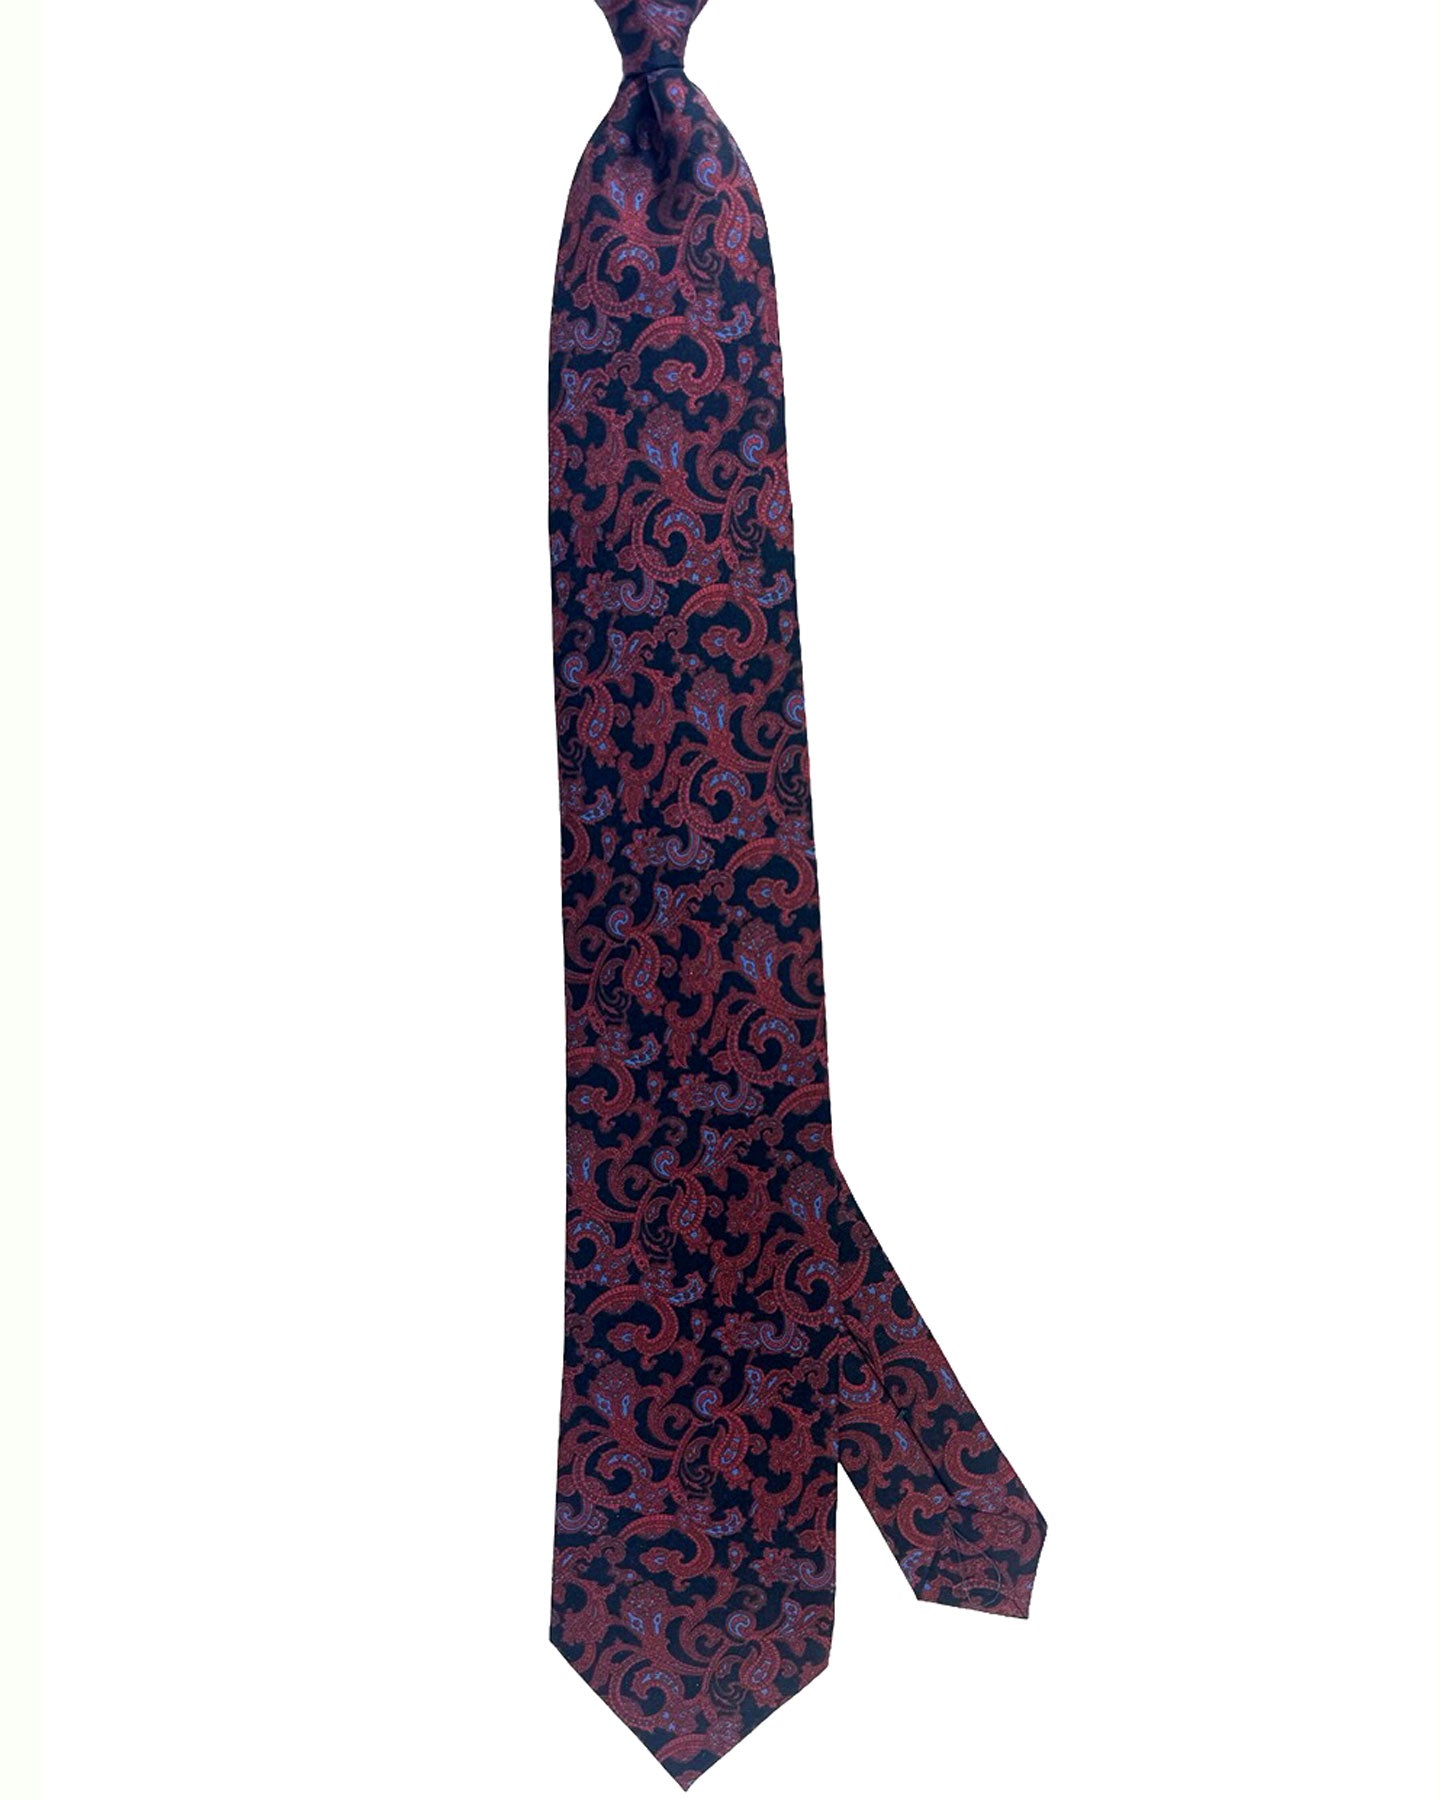 Stefano Ricci Silk Tie Black Bordeaux Blue Paisley Design